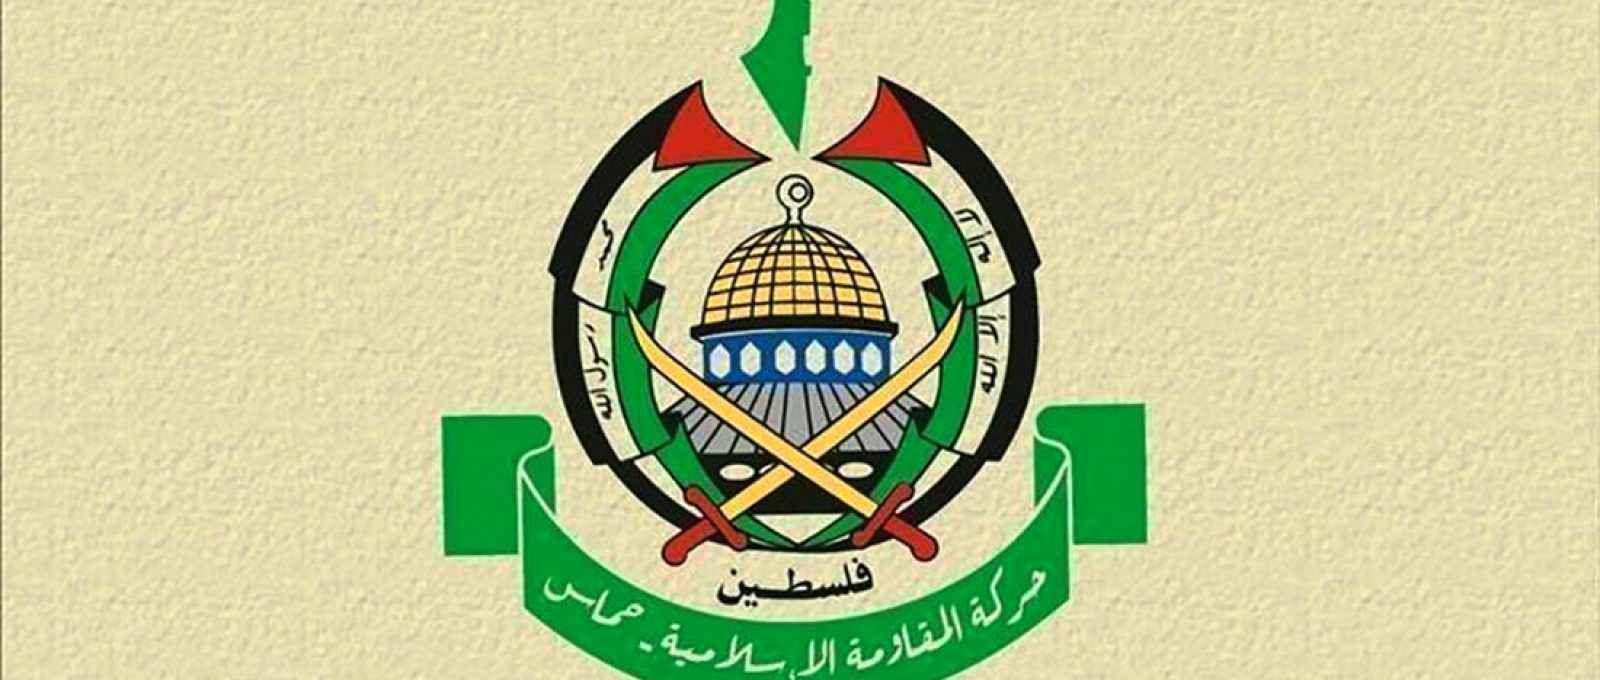 Emblema do Hamas.